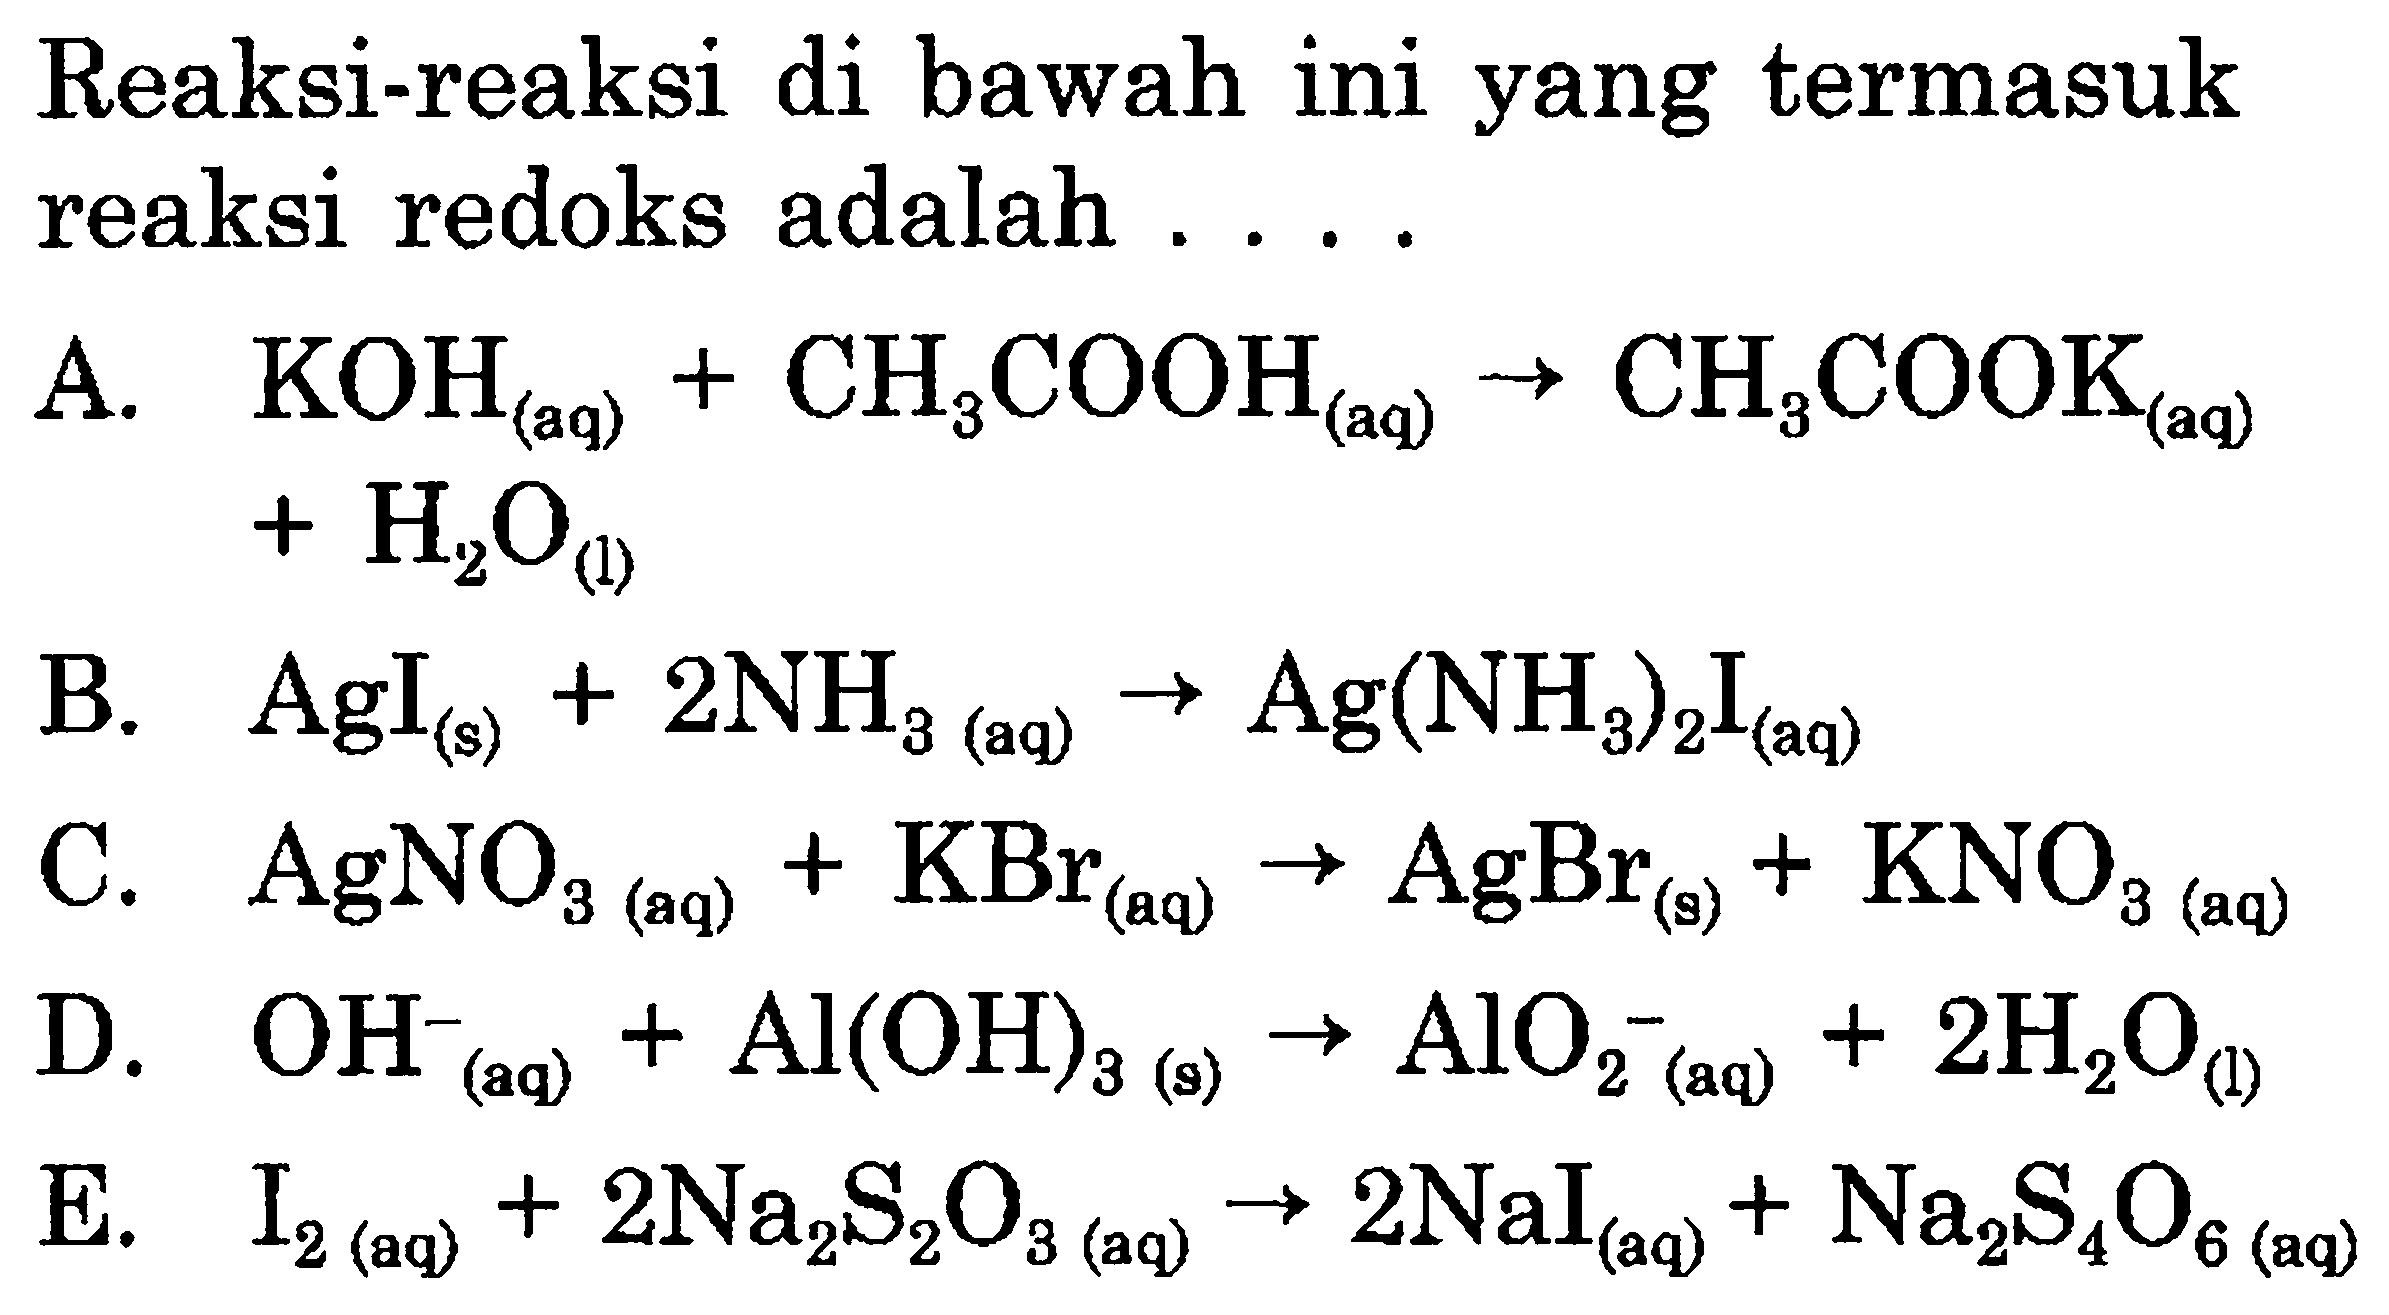 Reaksi-reaksi di bawah ini yang termasuk reaksi redoks adalah  ... . 

A.  KOH_((aq))+CH_(3) COOH_((aq)) -> CH_(3) COOK_((aq))   +H_(2) O_((1)) 
B.  AgI_((s))+2 NH_(3(aq)) -> Ag(NH_(3))_(2) I_((aq)) 
C.  AgNO_(3)(aq)+KBr_((aq)) -> AgBr_((s))+KNO_(3  { (aq) )) 
D.  OH_(( {(aq) ))^(-)+Al(OH)_(3(s)) -> AlO_(2)^(-)(aq)+2 H_(2) O_((l)) 
E.  I_(2  { (aq) ))+2 Na_(2) ~S_(2) O_(3(aq)) -> 2 NaI_((aq))+Na_(2) ~S_(4) O_(6  { (aq) )) 